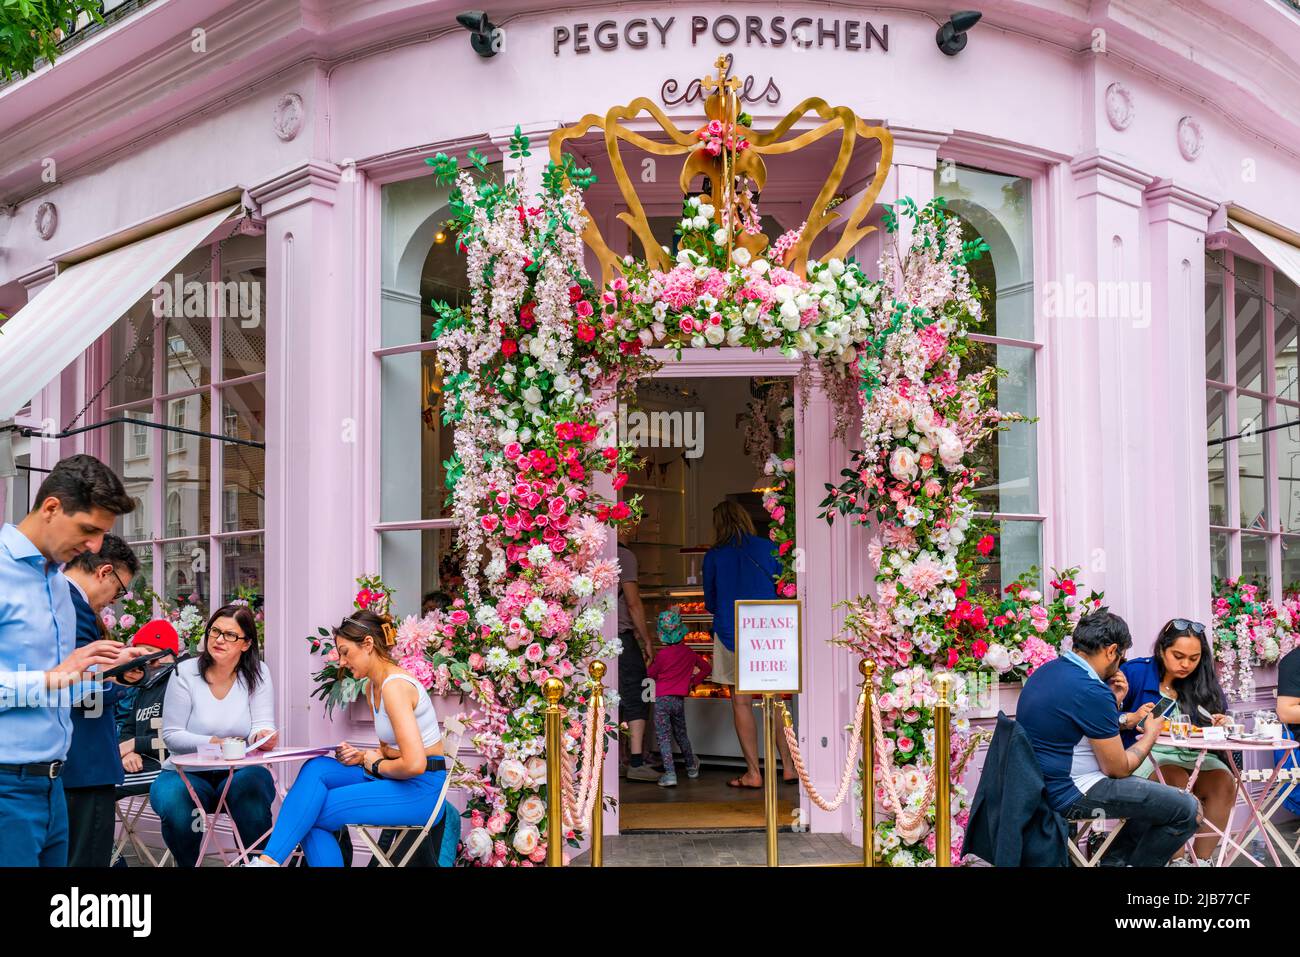 LONDRA, UK - 03 GIUGNO 2022: La panetteria Peggy Porschen di Belgravia è decorata con una spettacolare esposizione floreale per l'evento Chelsea in Bloom Foto Stock